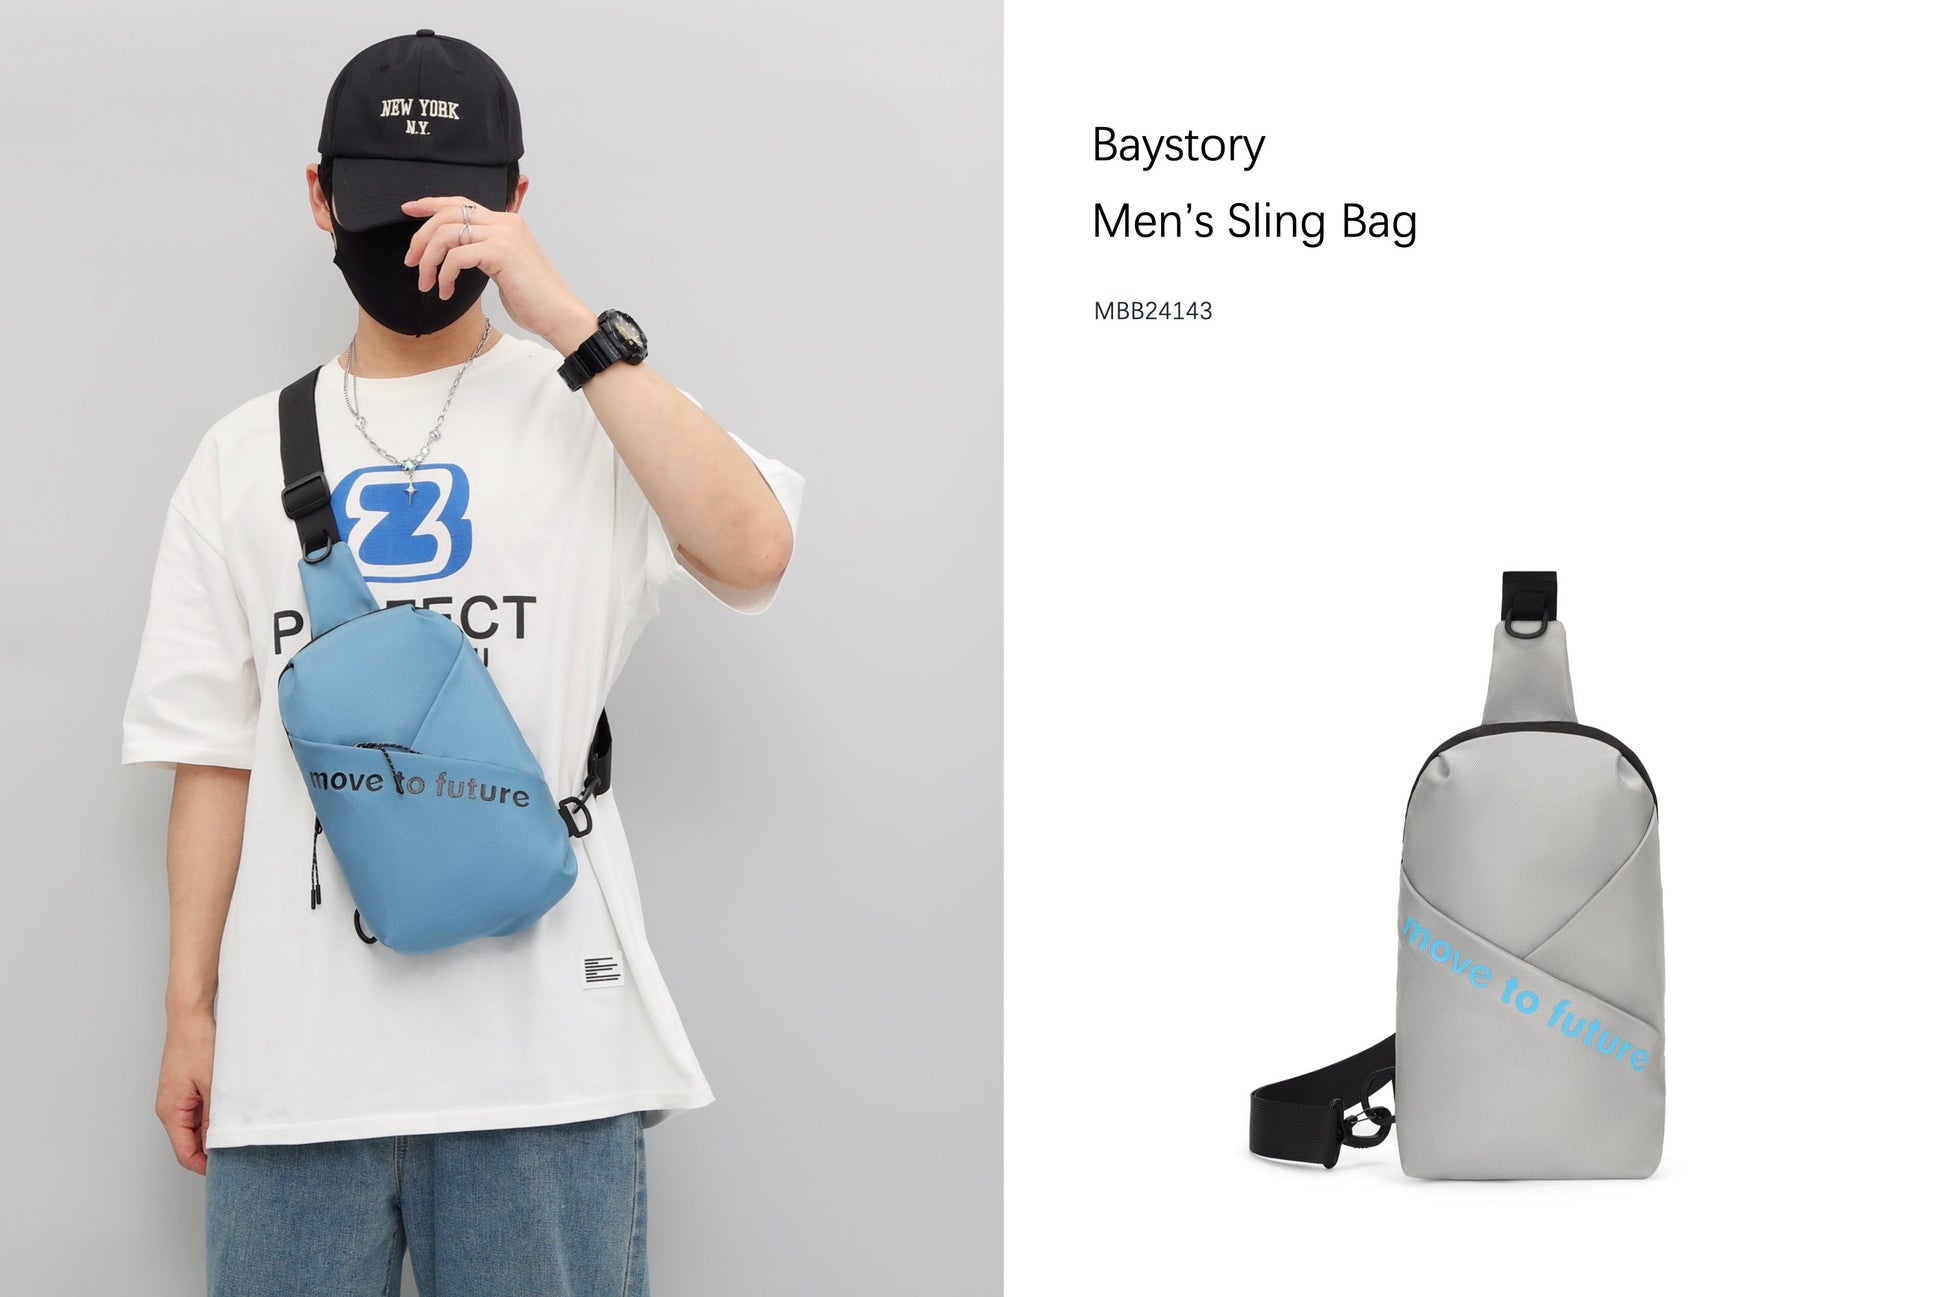 Baystory Men’s Sling Bag MBB24143 - Baystory